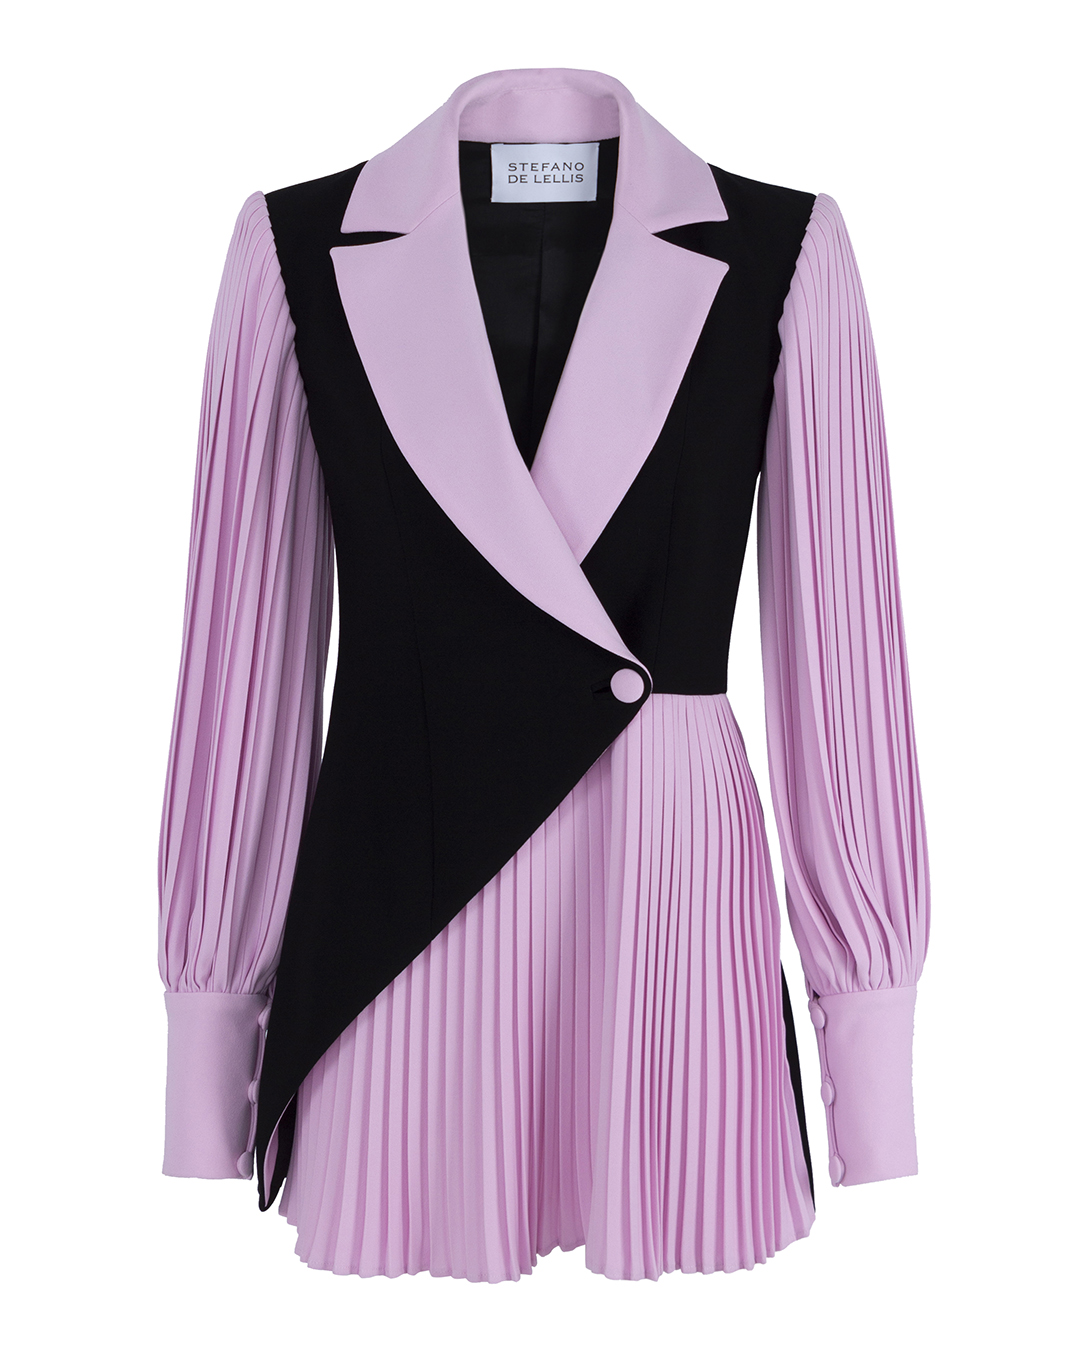 платье мини Stefano De Lellis SARA черный+розовый 40, размер 40, цвет черный+розовый SARA черный+розовый 40 - фото 1